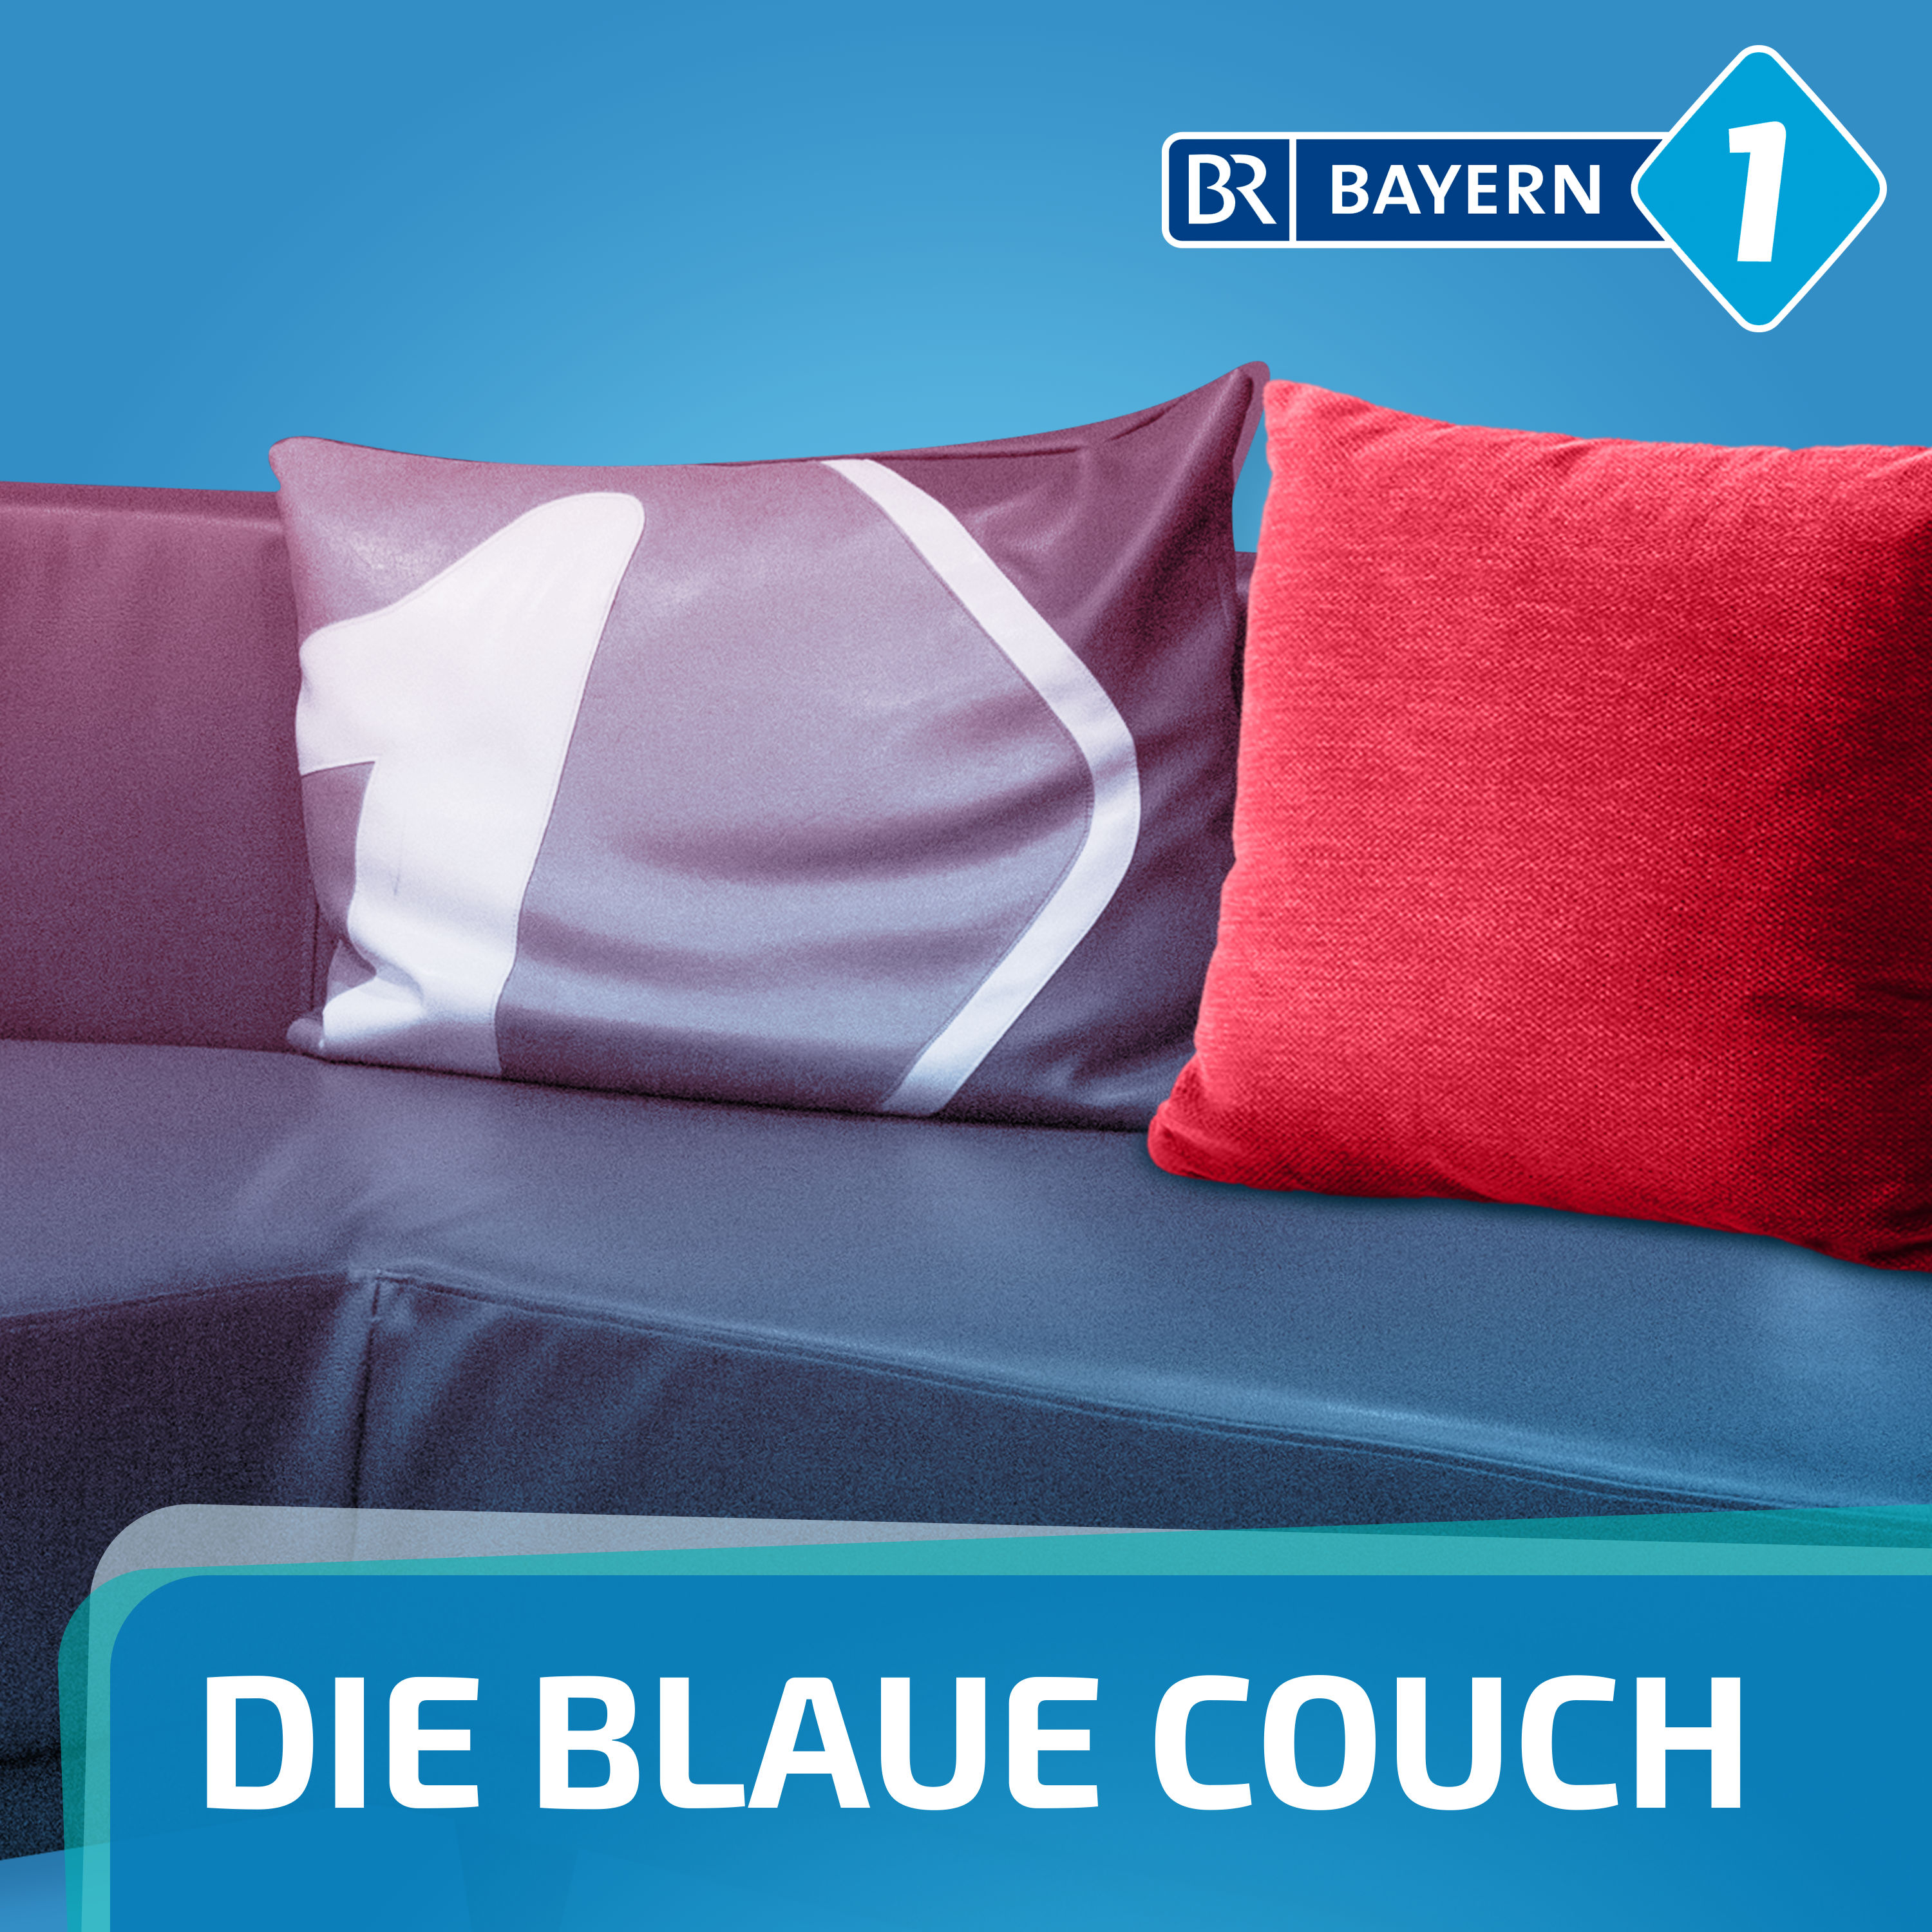 Die Blaue Couch